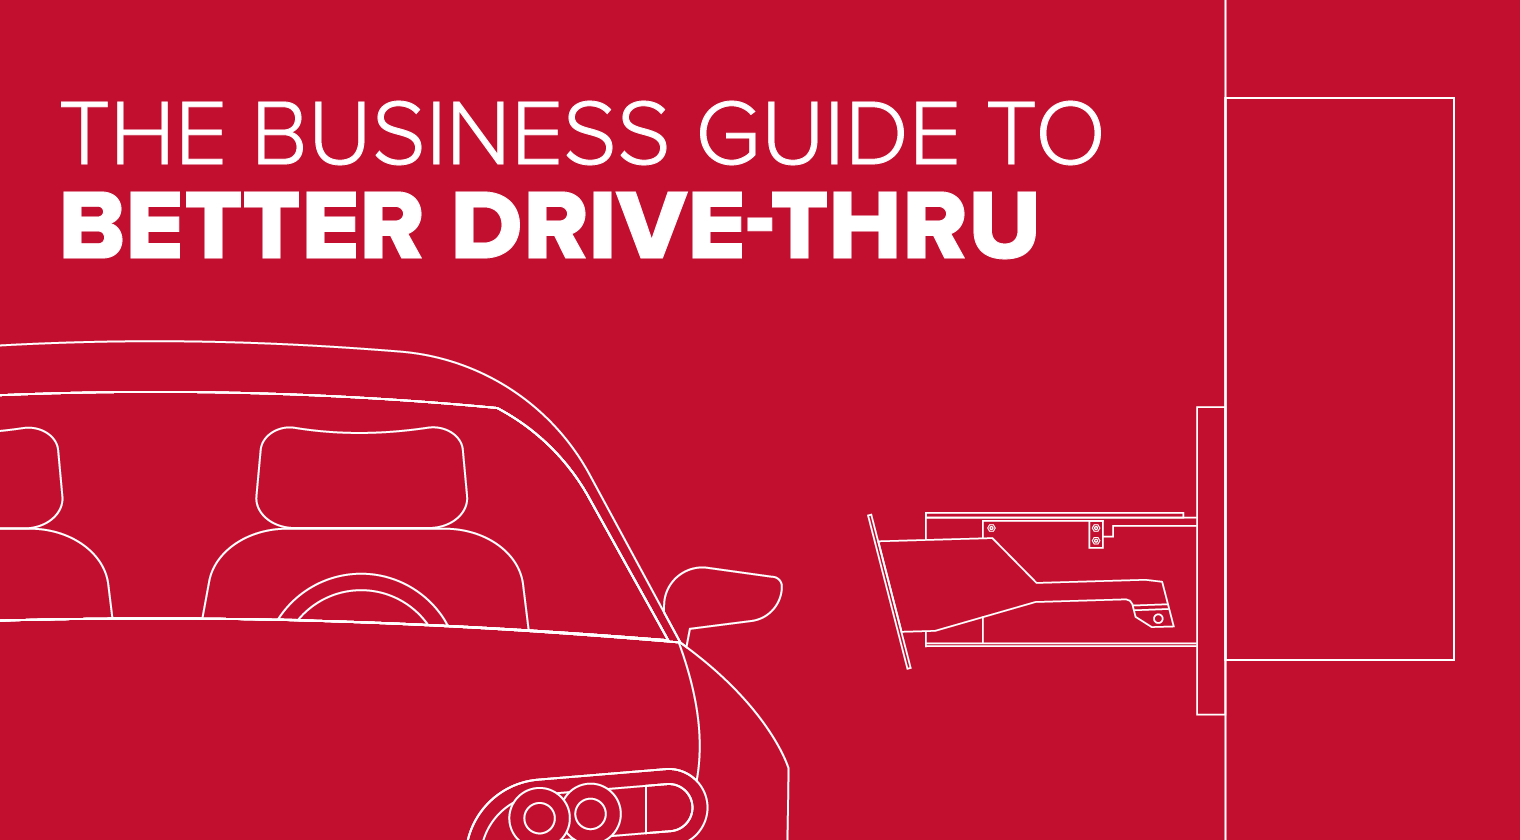 Business Guide to Better Drive-thru | Bavis Fabacraft